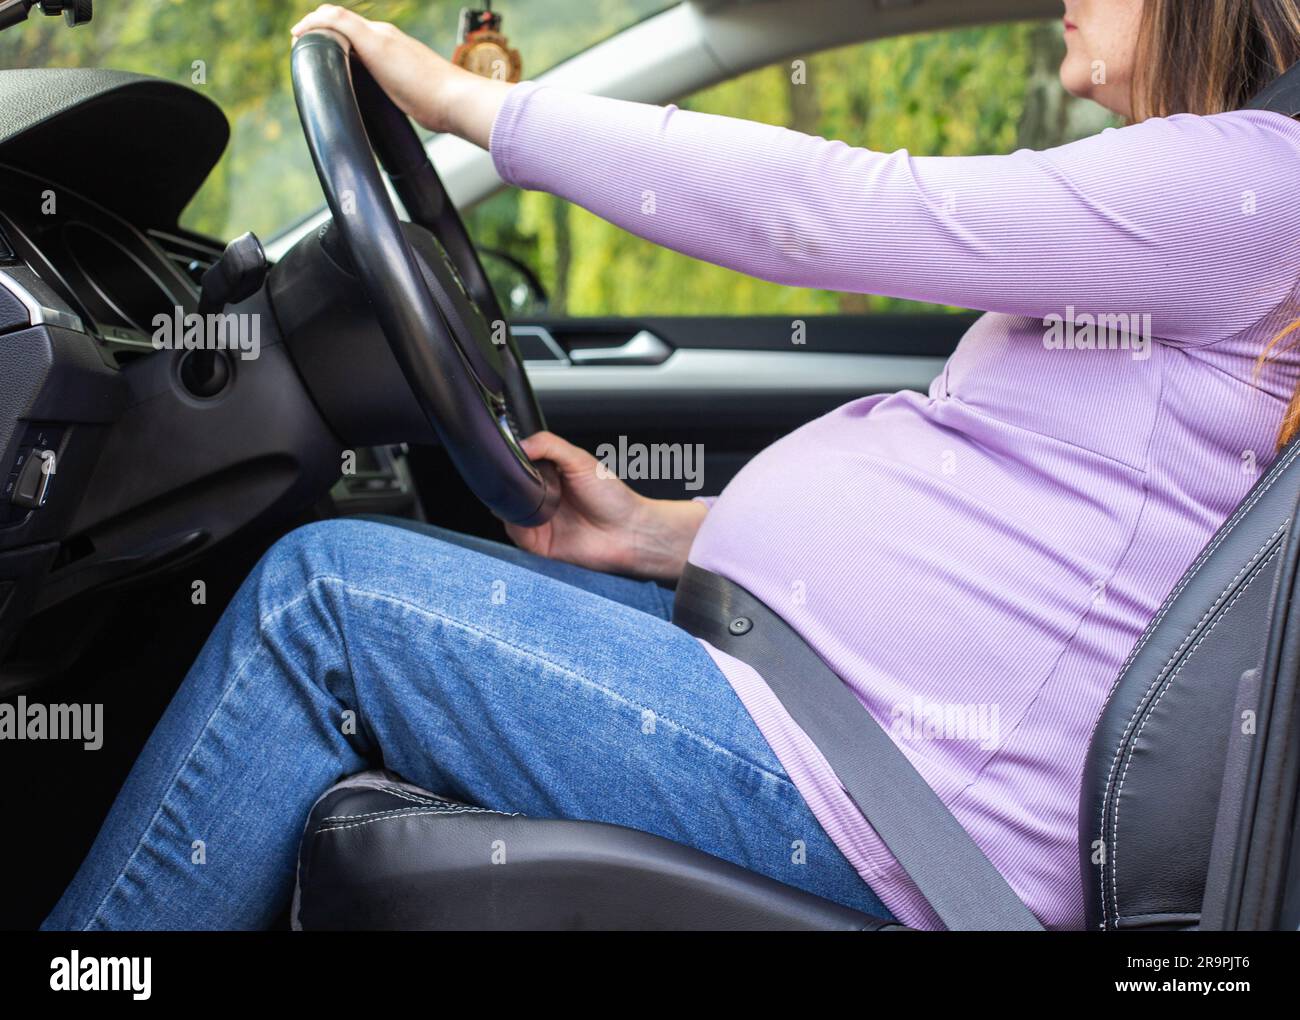 Eine schwangere Frau, die einen Sicherheitsgurt trägt, fährt ein